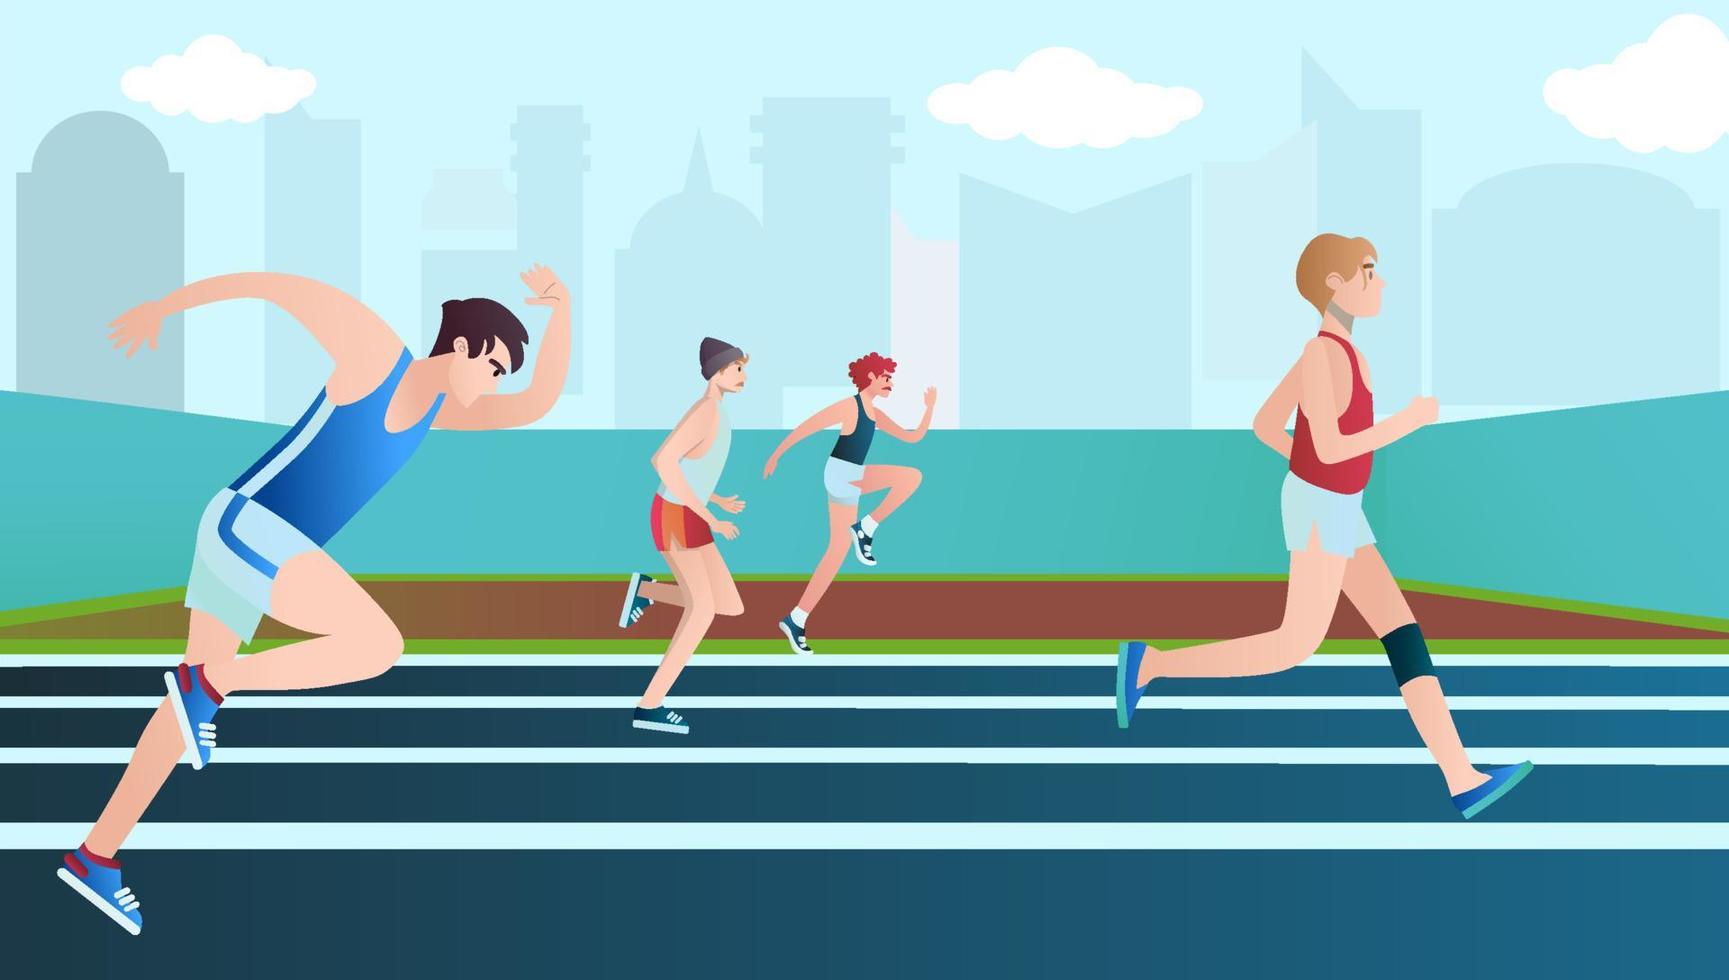 uomini vestiti con abiti sportivi che corrono la maratona. personaggi dei cartoni animati piatti isolati su sfondo. illustrazione vettoriale